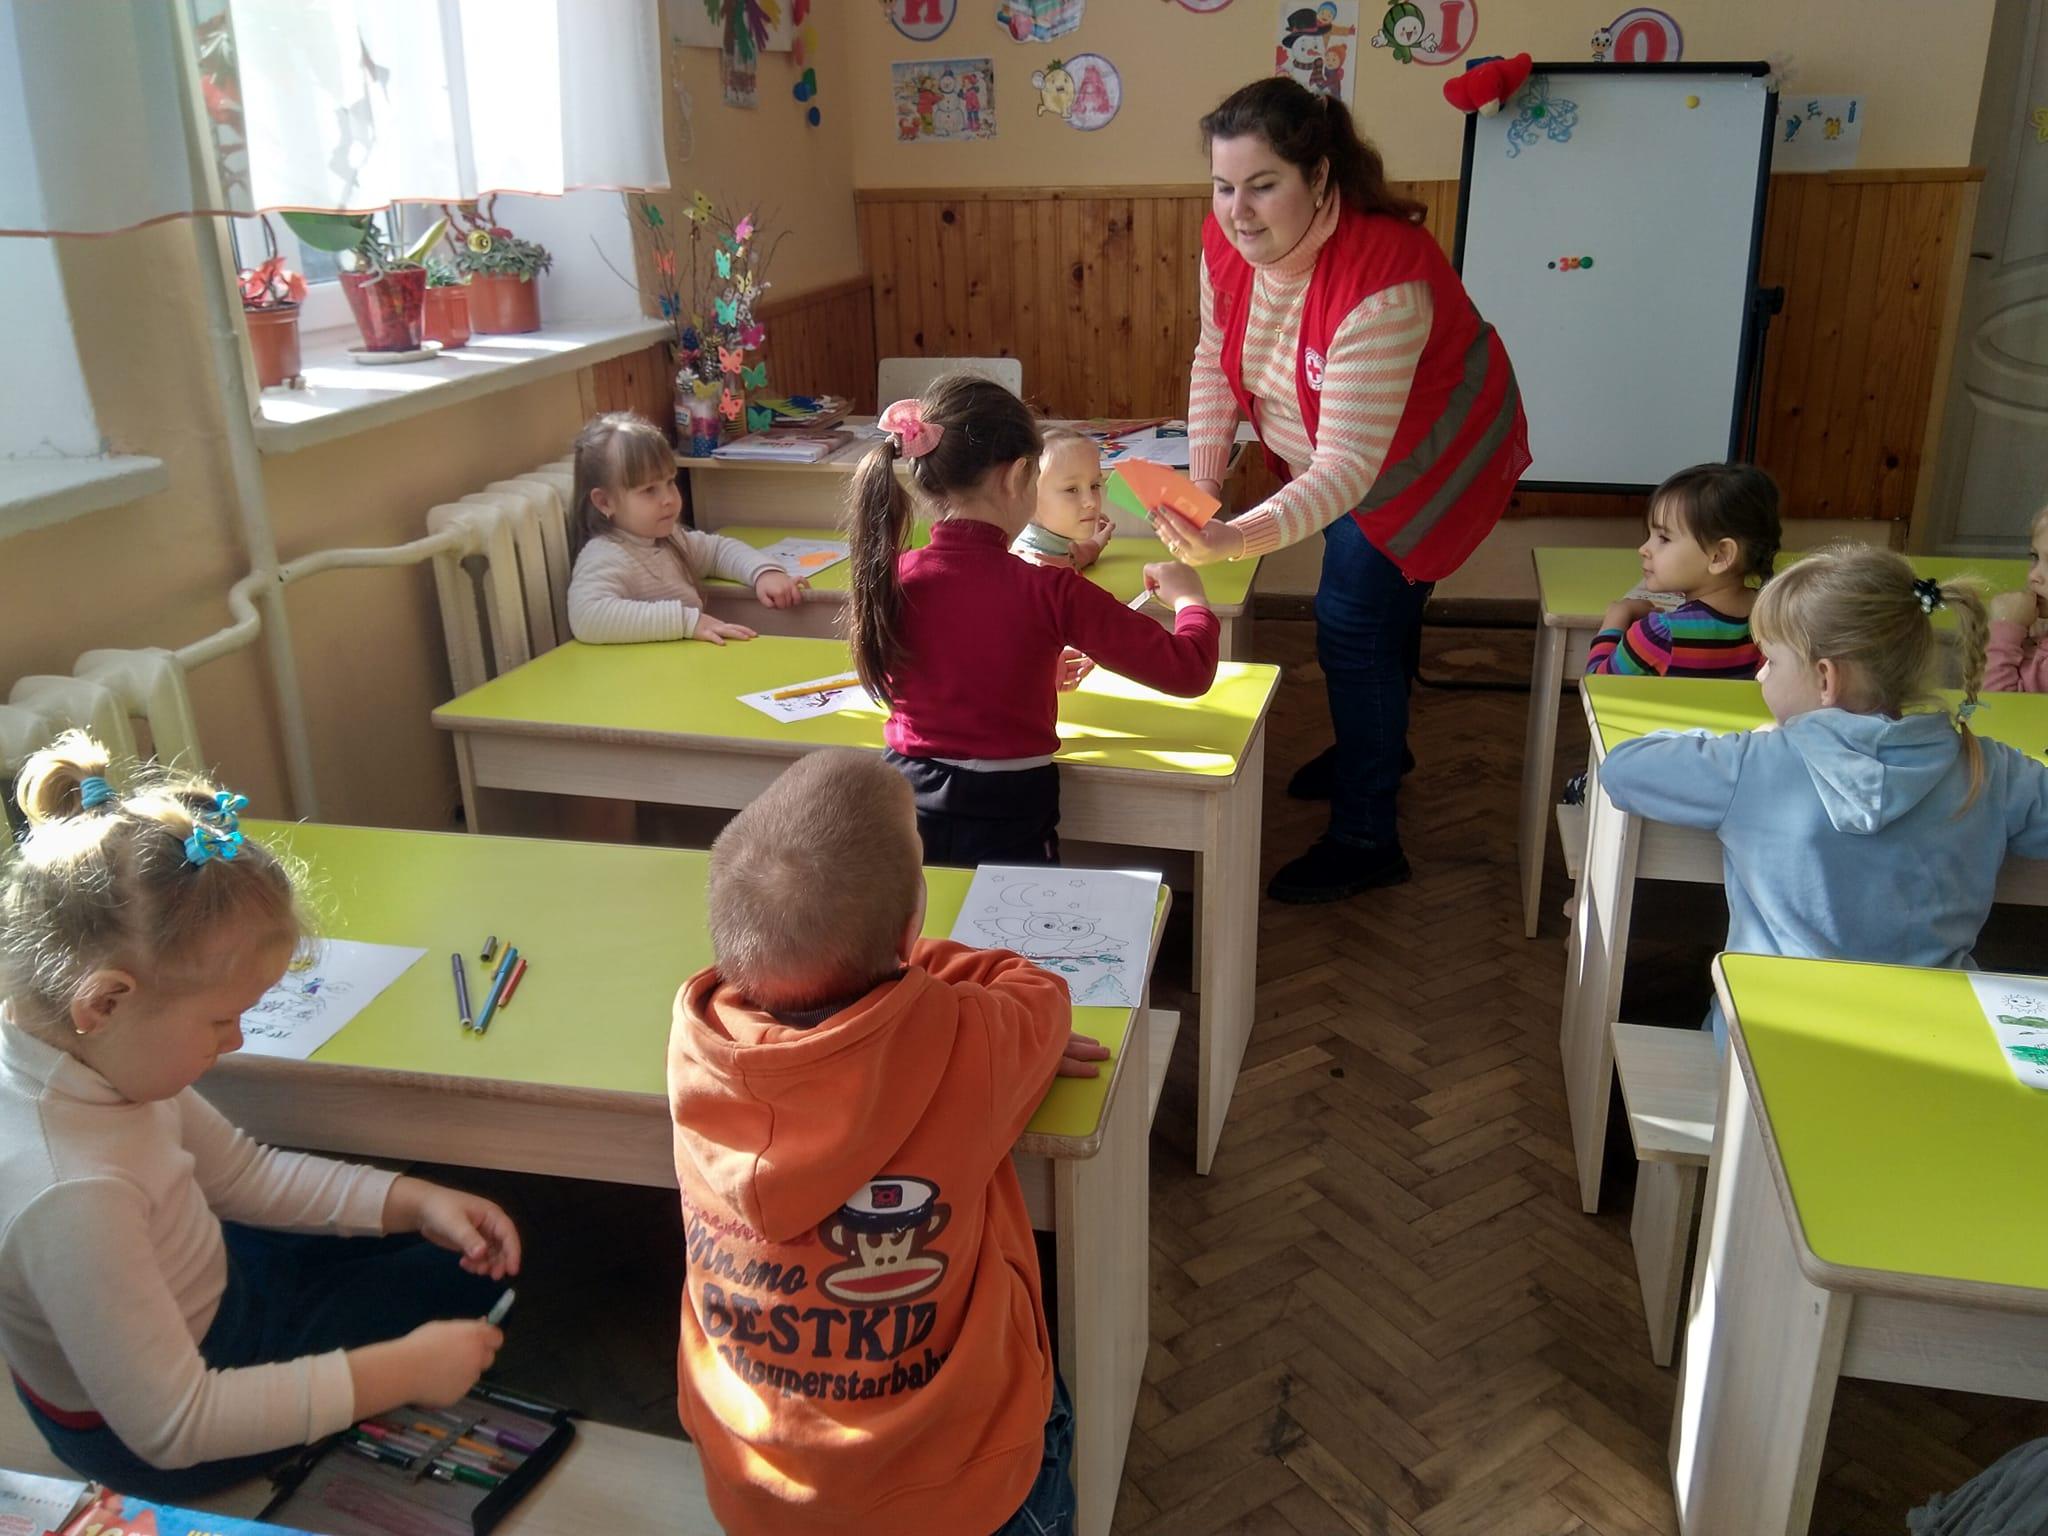 Mehrere Kinder sitzen in einem Klassenzimmer. Eine Frau verteilt Karten zum spielen.